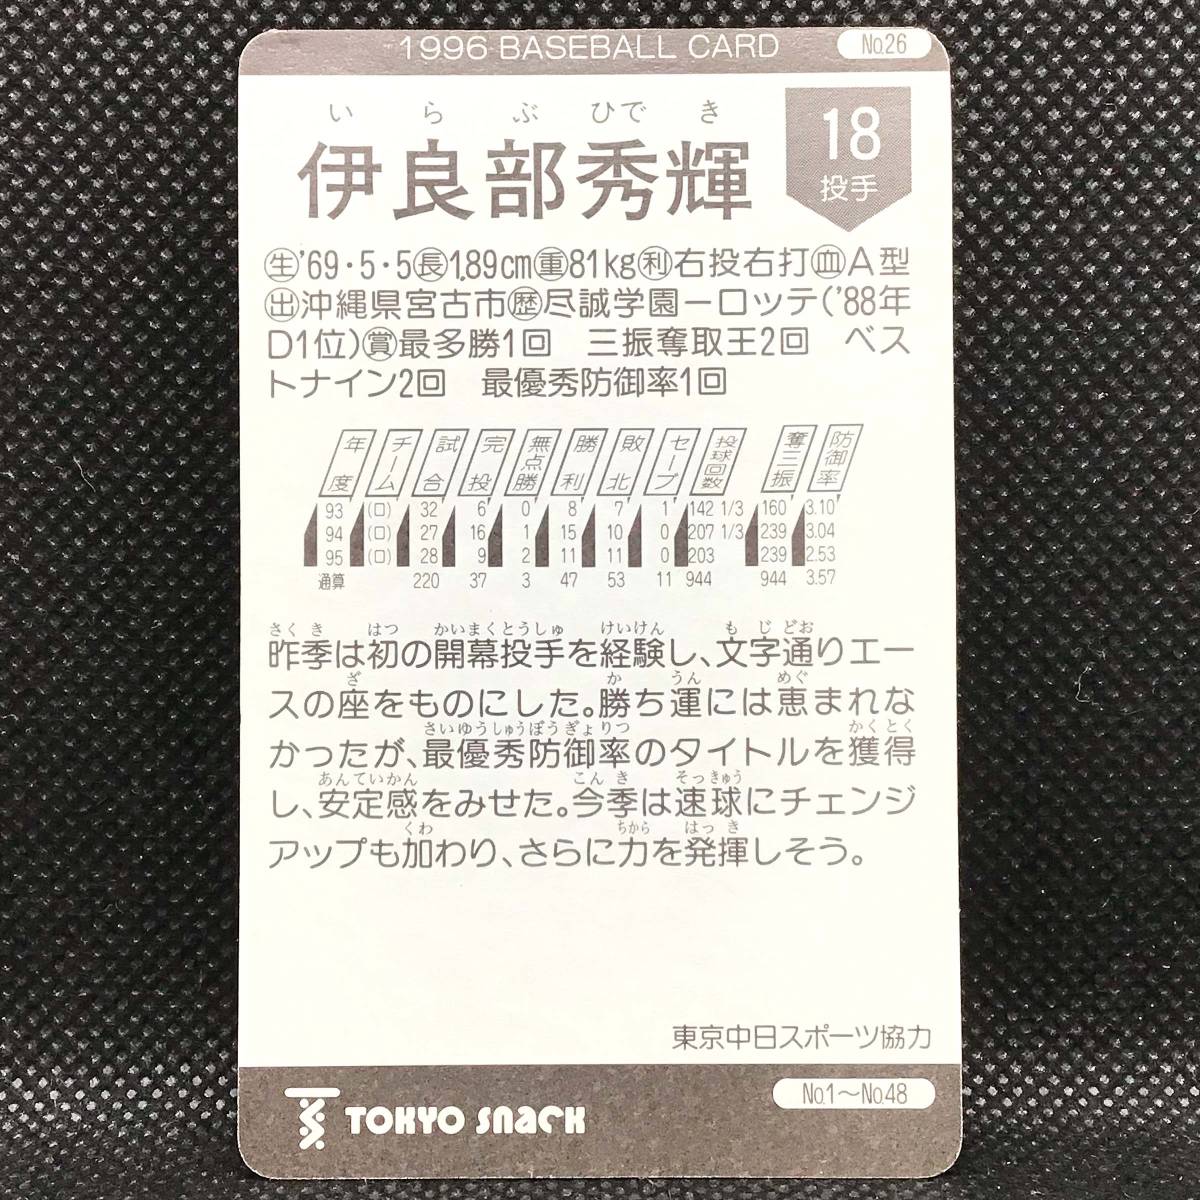 CFP[ at that time thing ]TOKYO snack Tokyo snack baseball card 1996 No.026. good part preeminence shining Professional Baseball Lotte Marines 